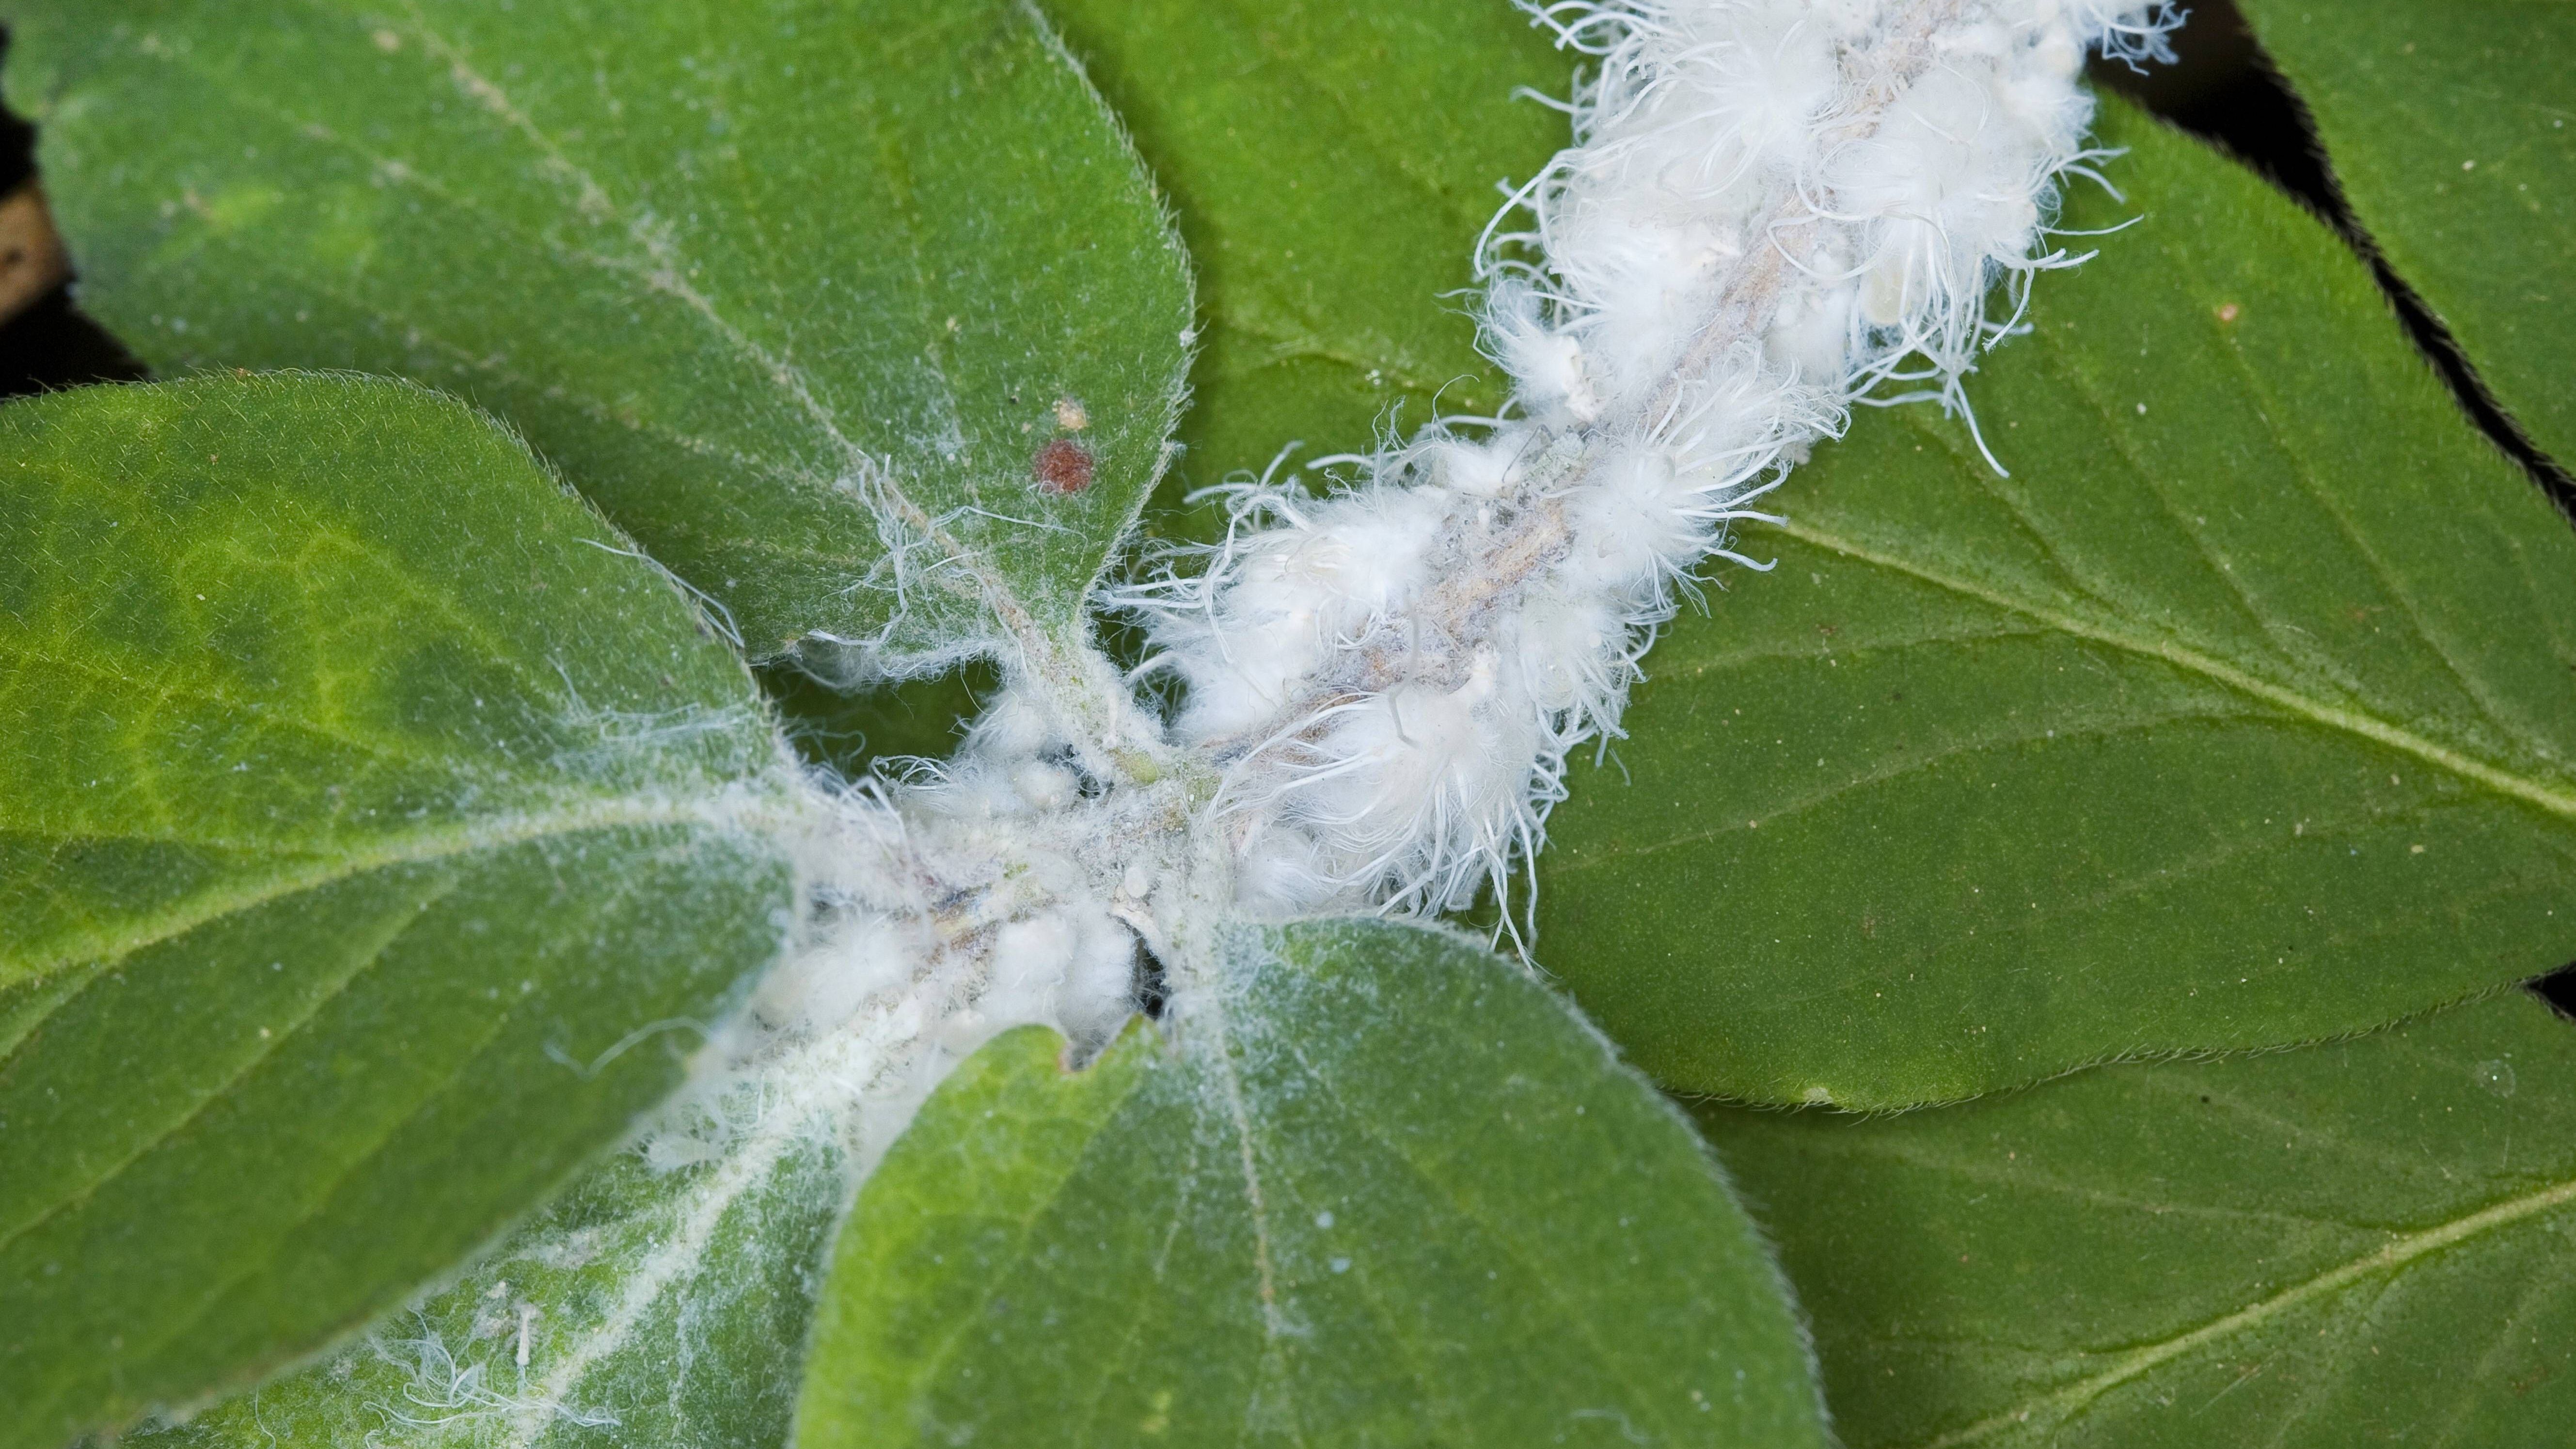 Die Schädlinge scheiden ein weißes Gespinst aus, das ihre Eier schützt. Es sieht aus wie Watte oder ein Wollfaden.